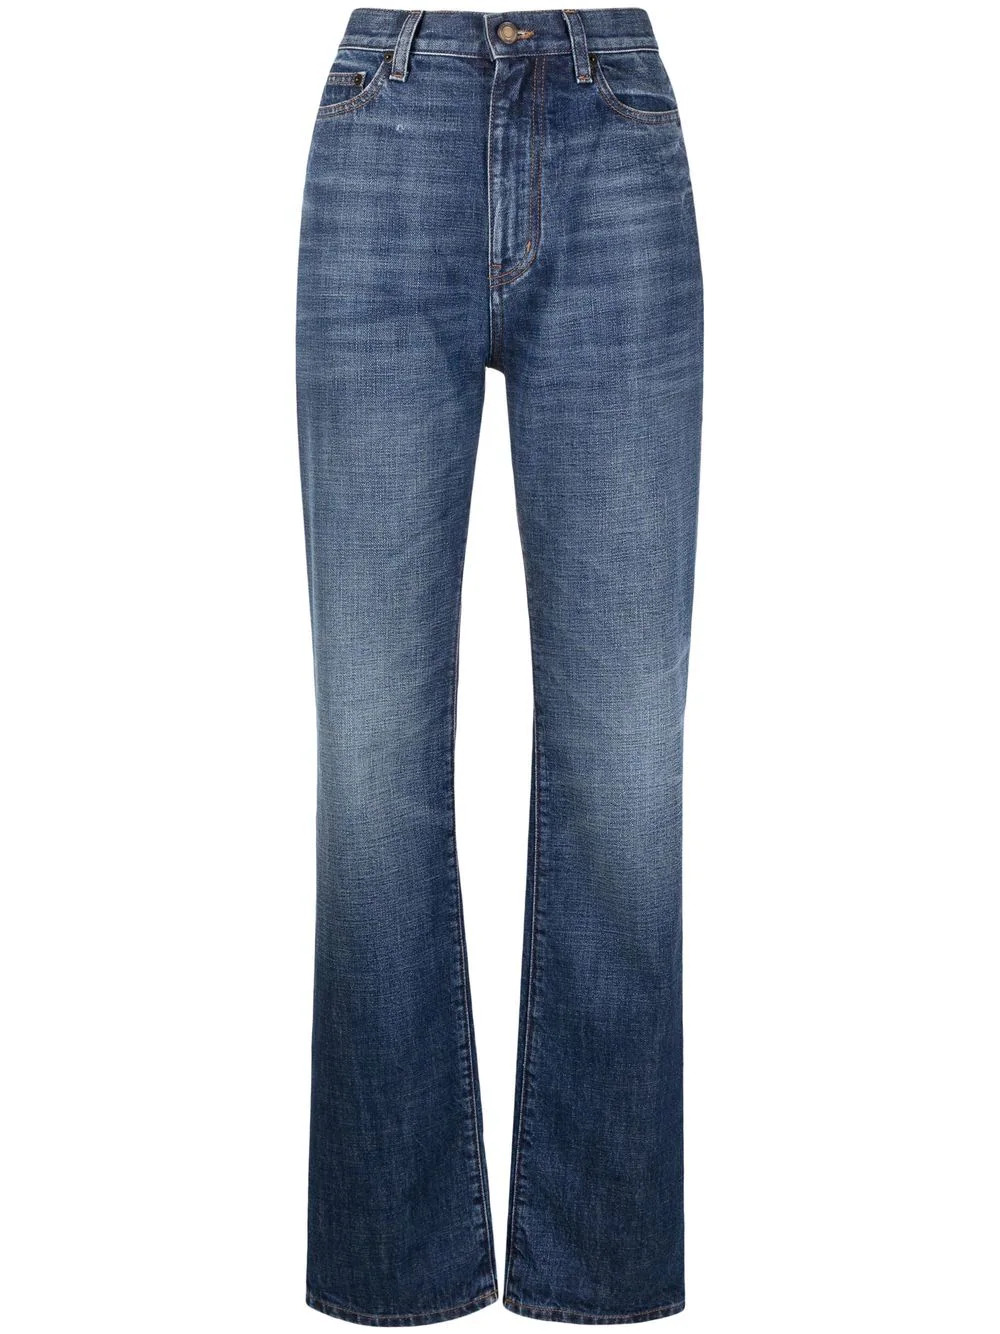 90er-Jahre-Jeans mit hoher Taille